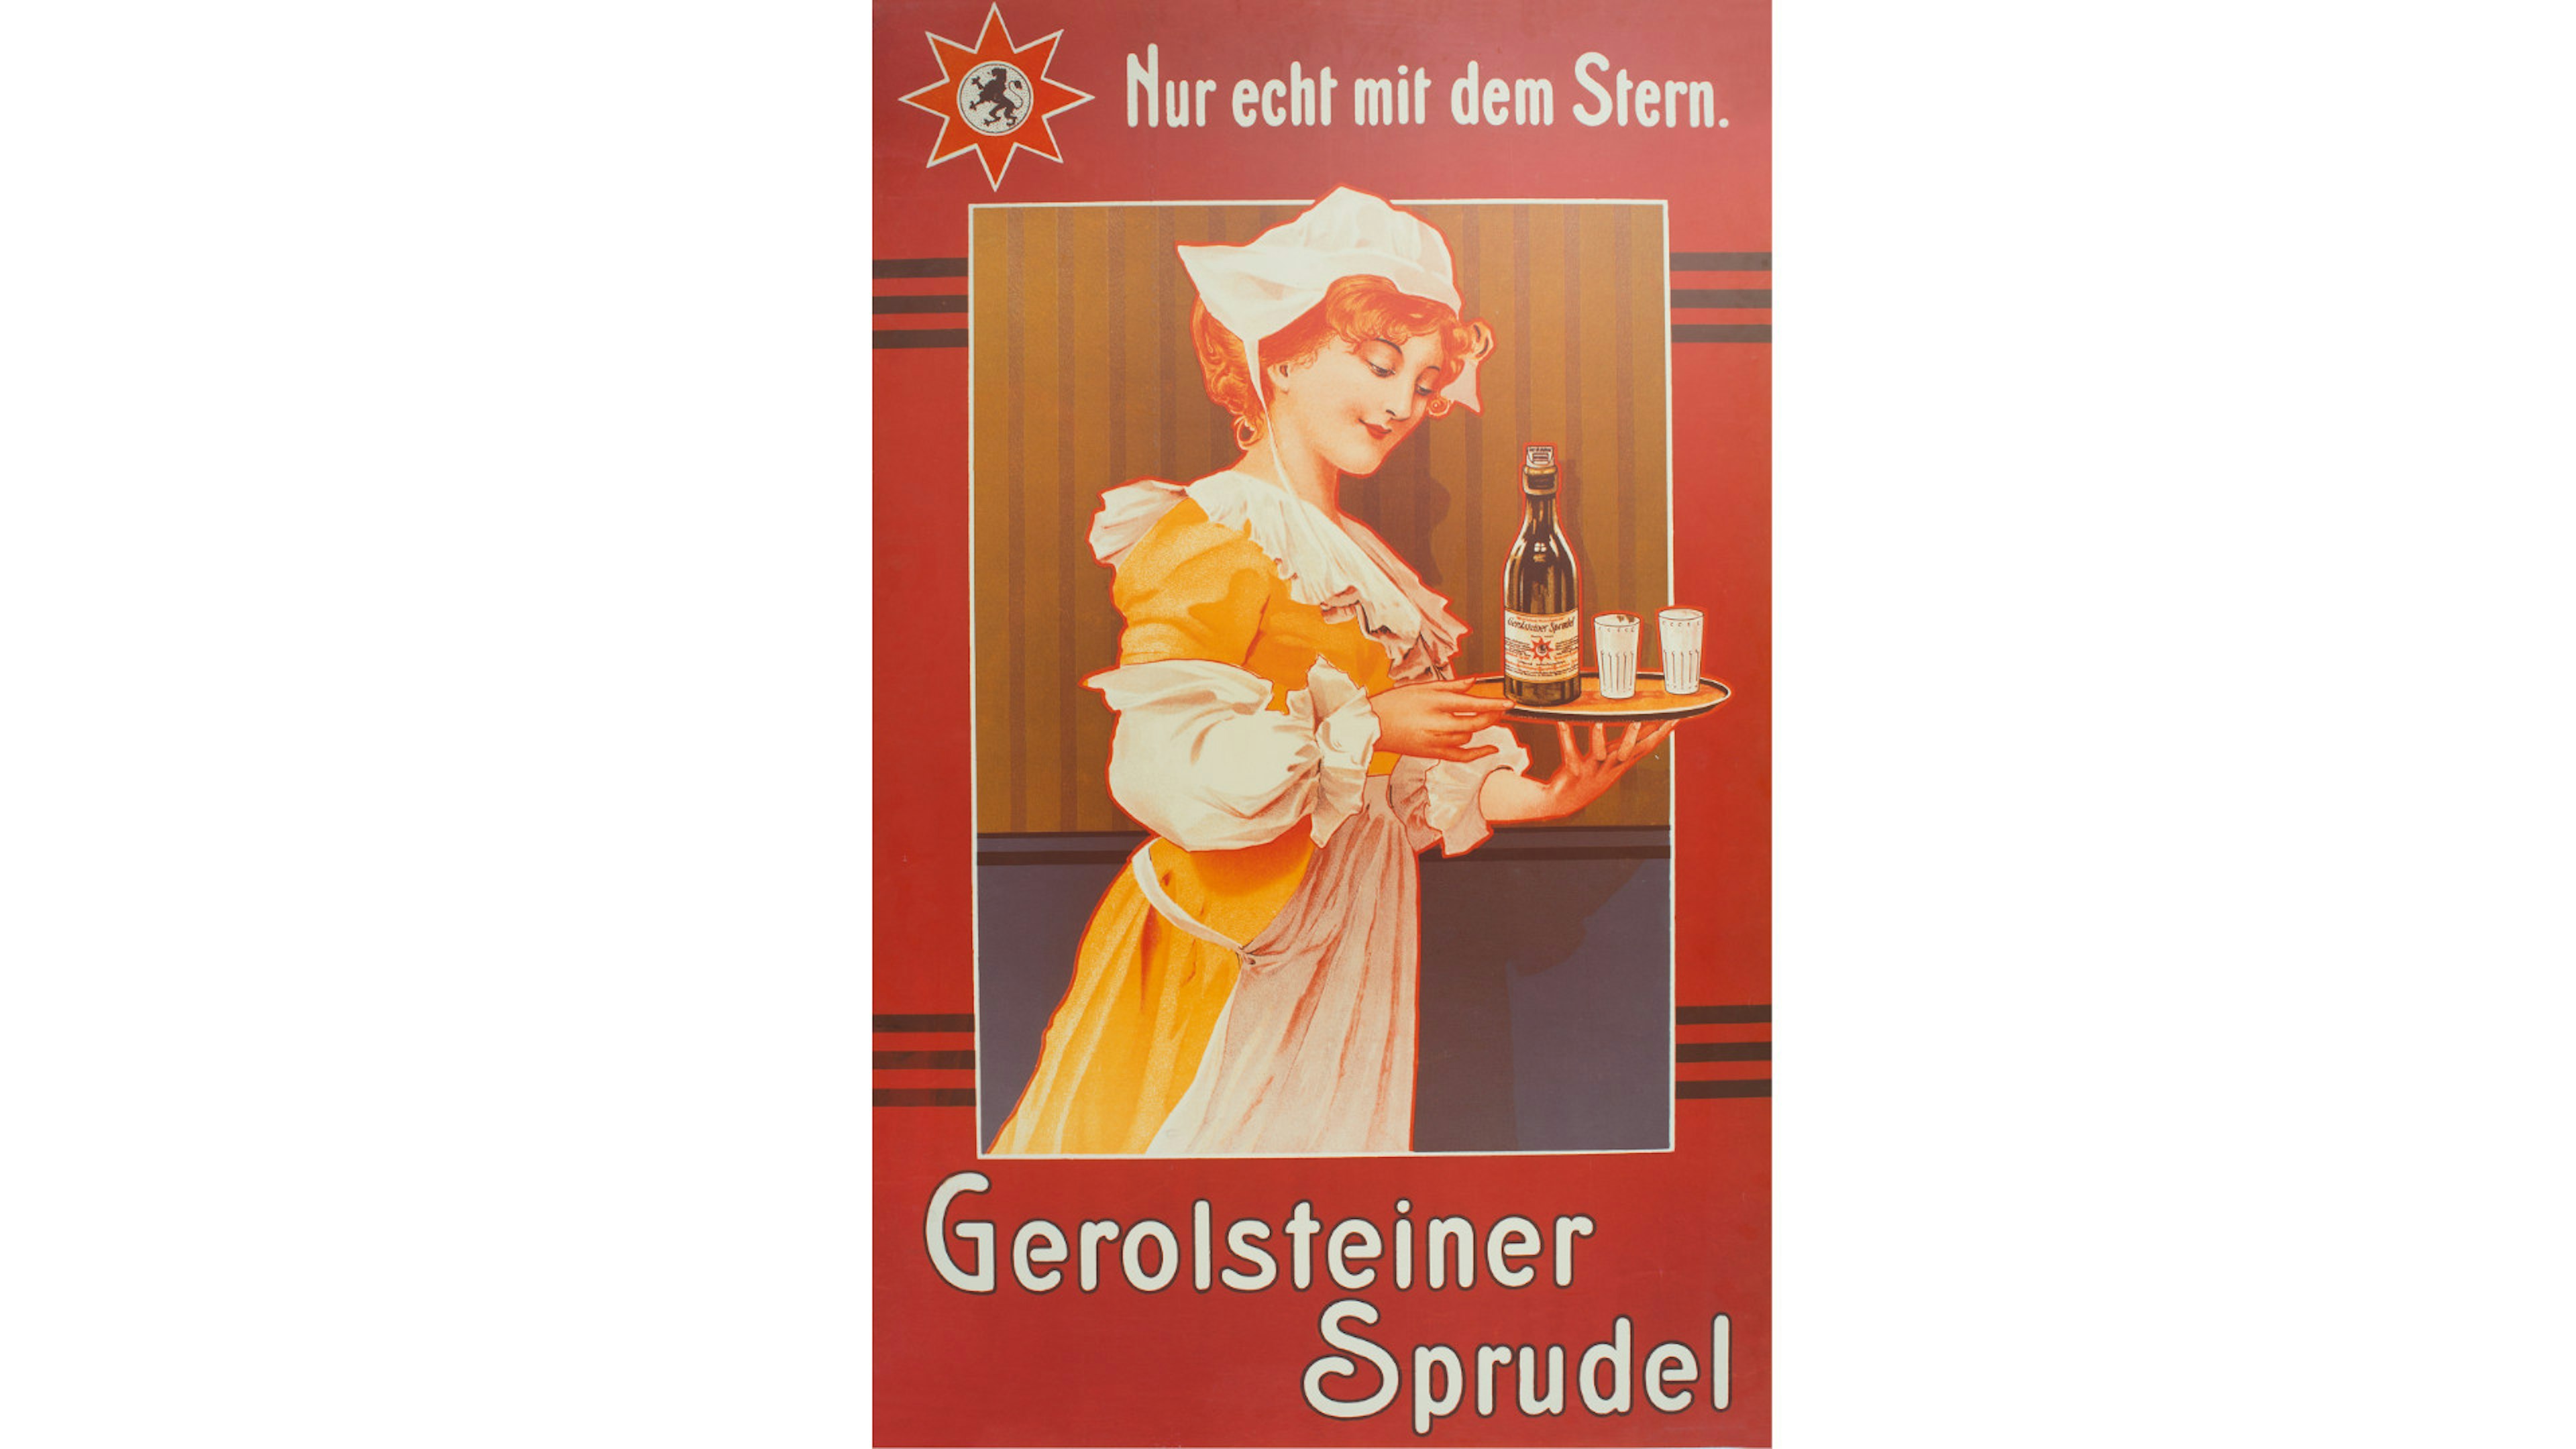 Eine Gerolsteiner Sprudel Werbeanzeige, die eine Frau und einen Mann beim Trinken zeigt